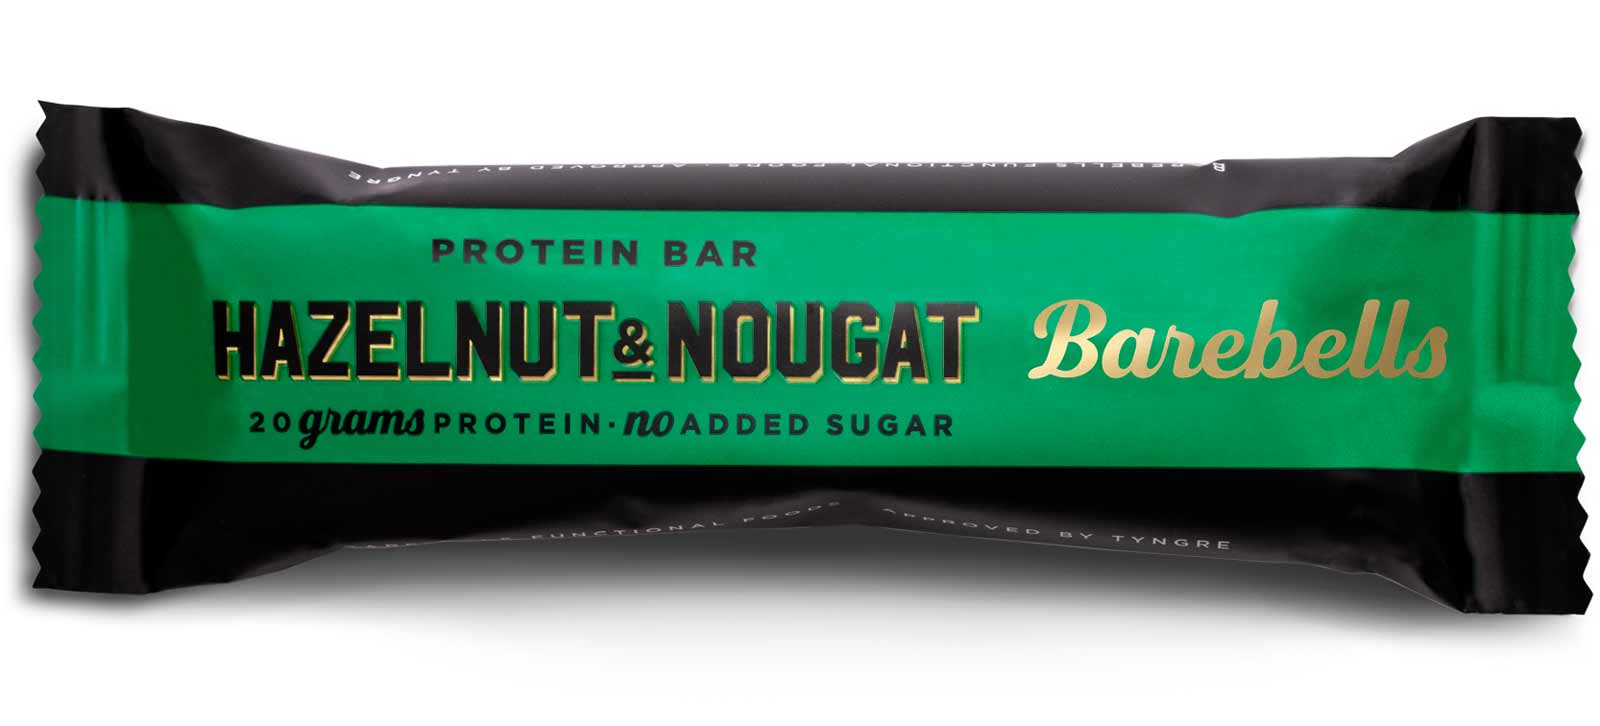 Barebells Hazelnut & Nougat: Strong taste